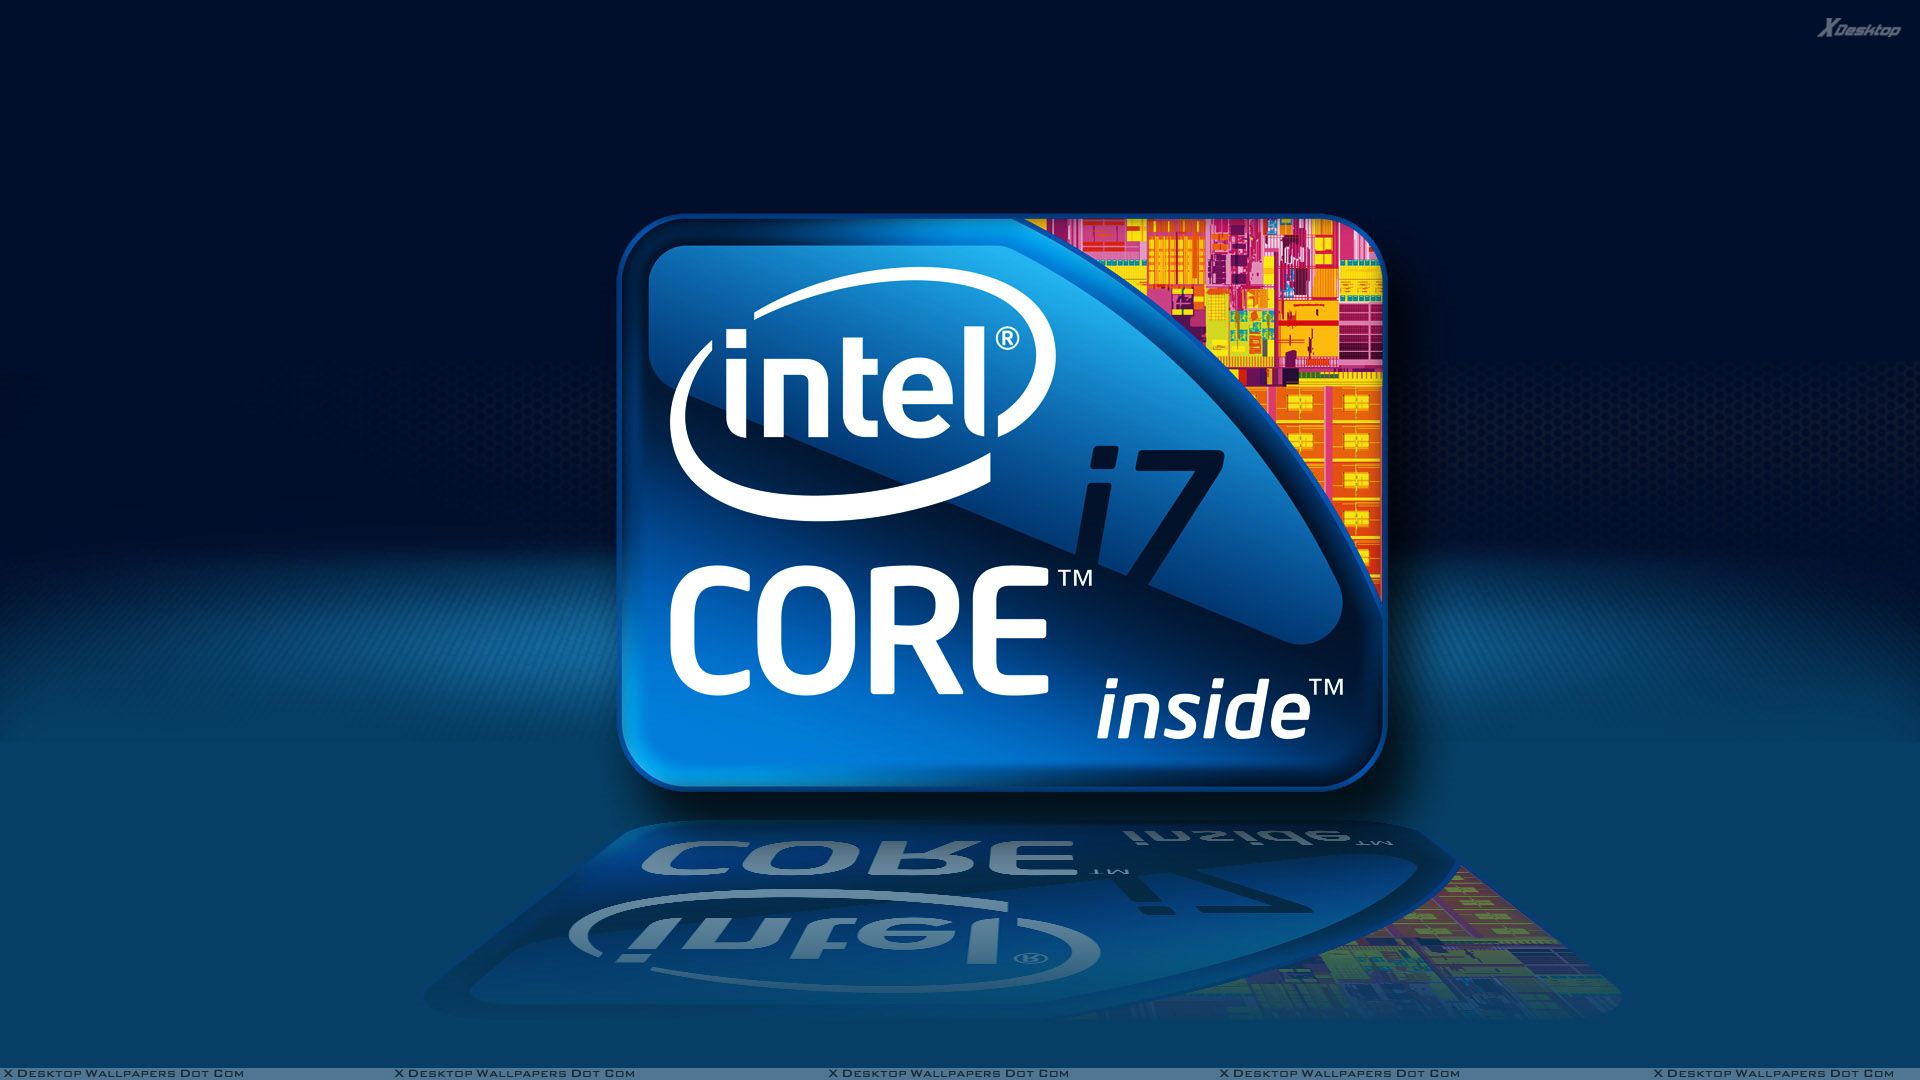 Intel Inside Wallpapers